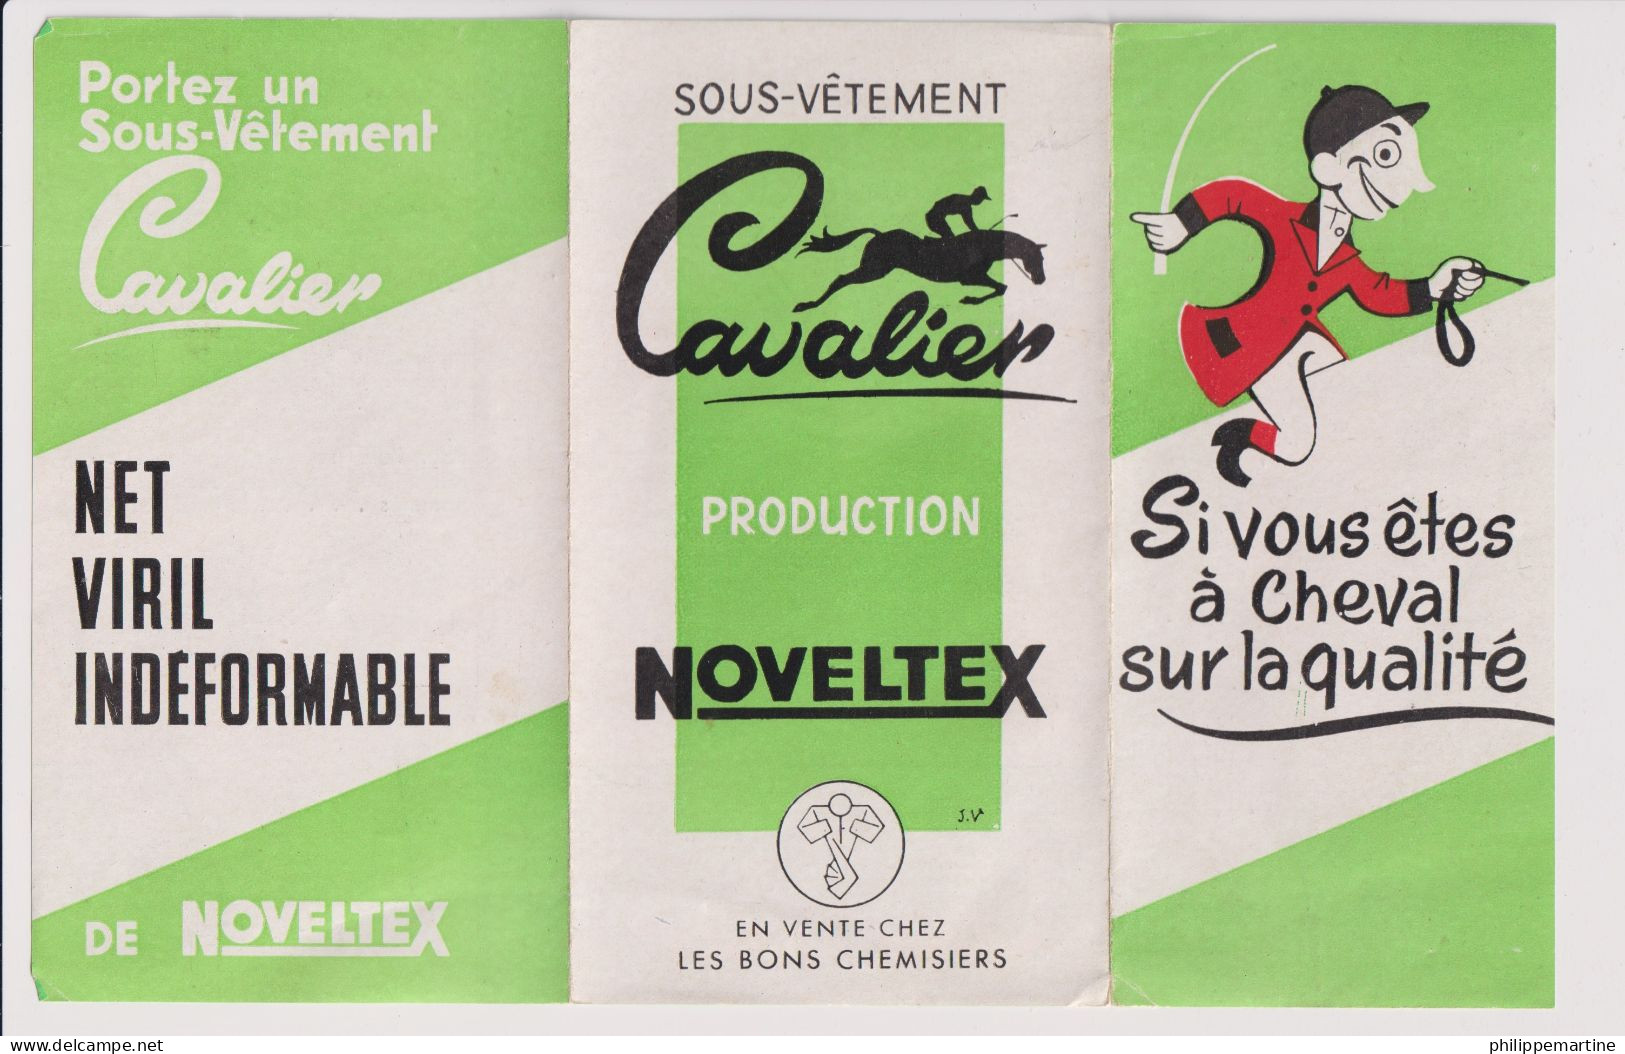 Dépliant Sous-vêtement Cavalier - Production Noveltex - Publicités